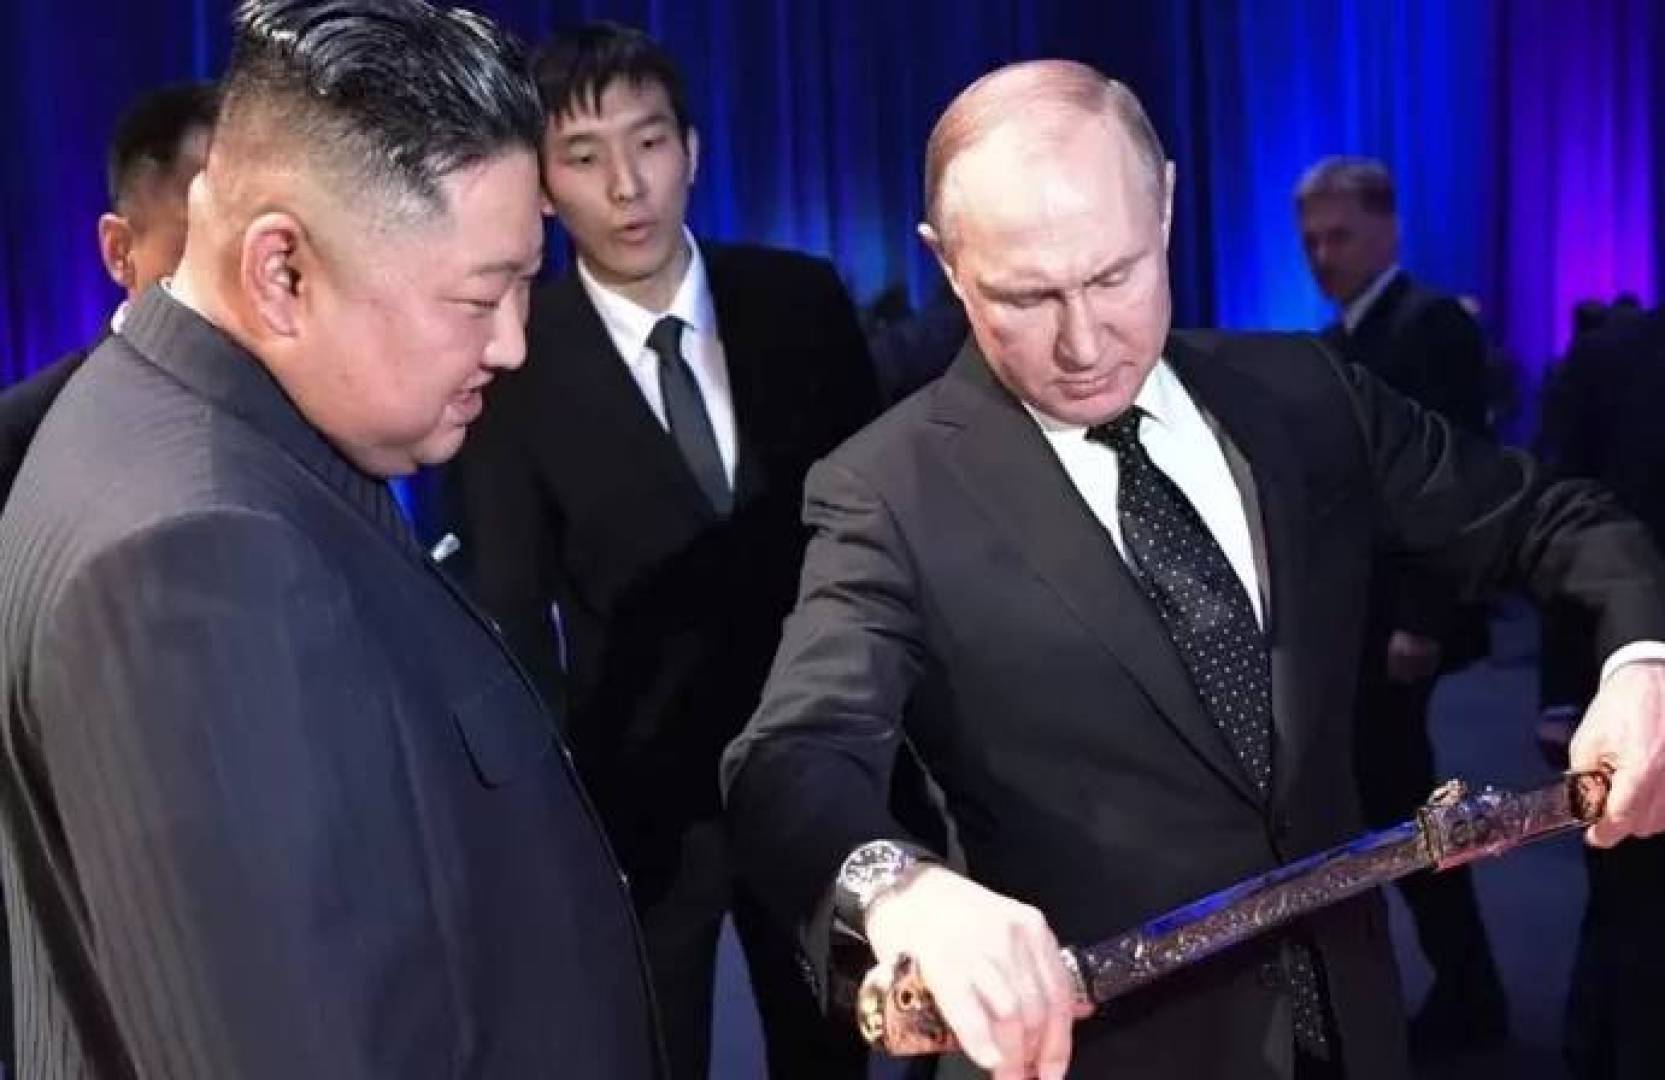 الكشف عن الهدايا المتبادلة بين الرئيسين بوتين وكيم جونغ